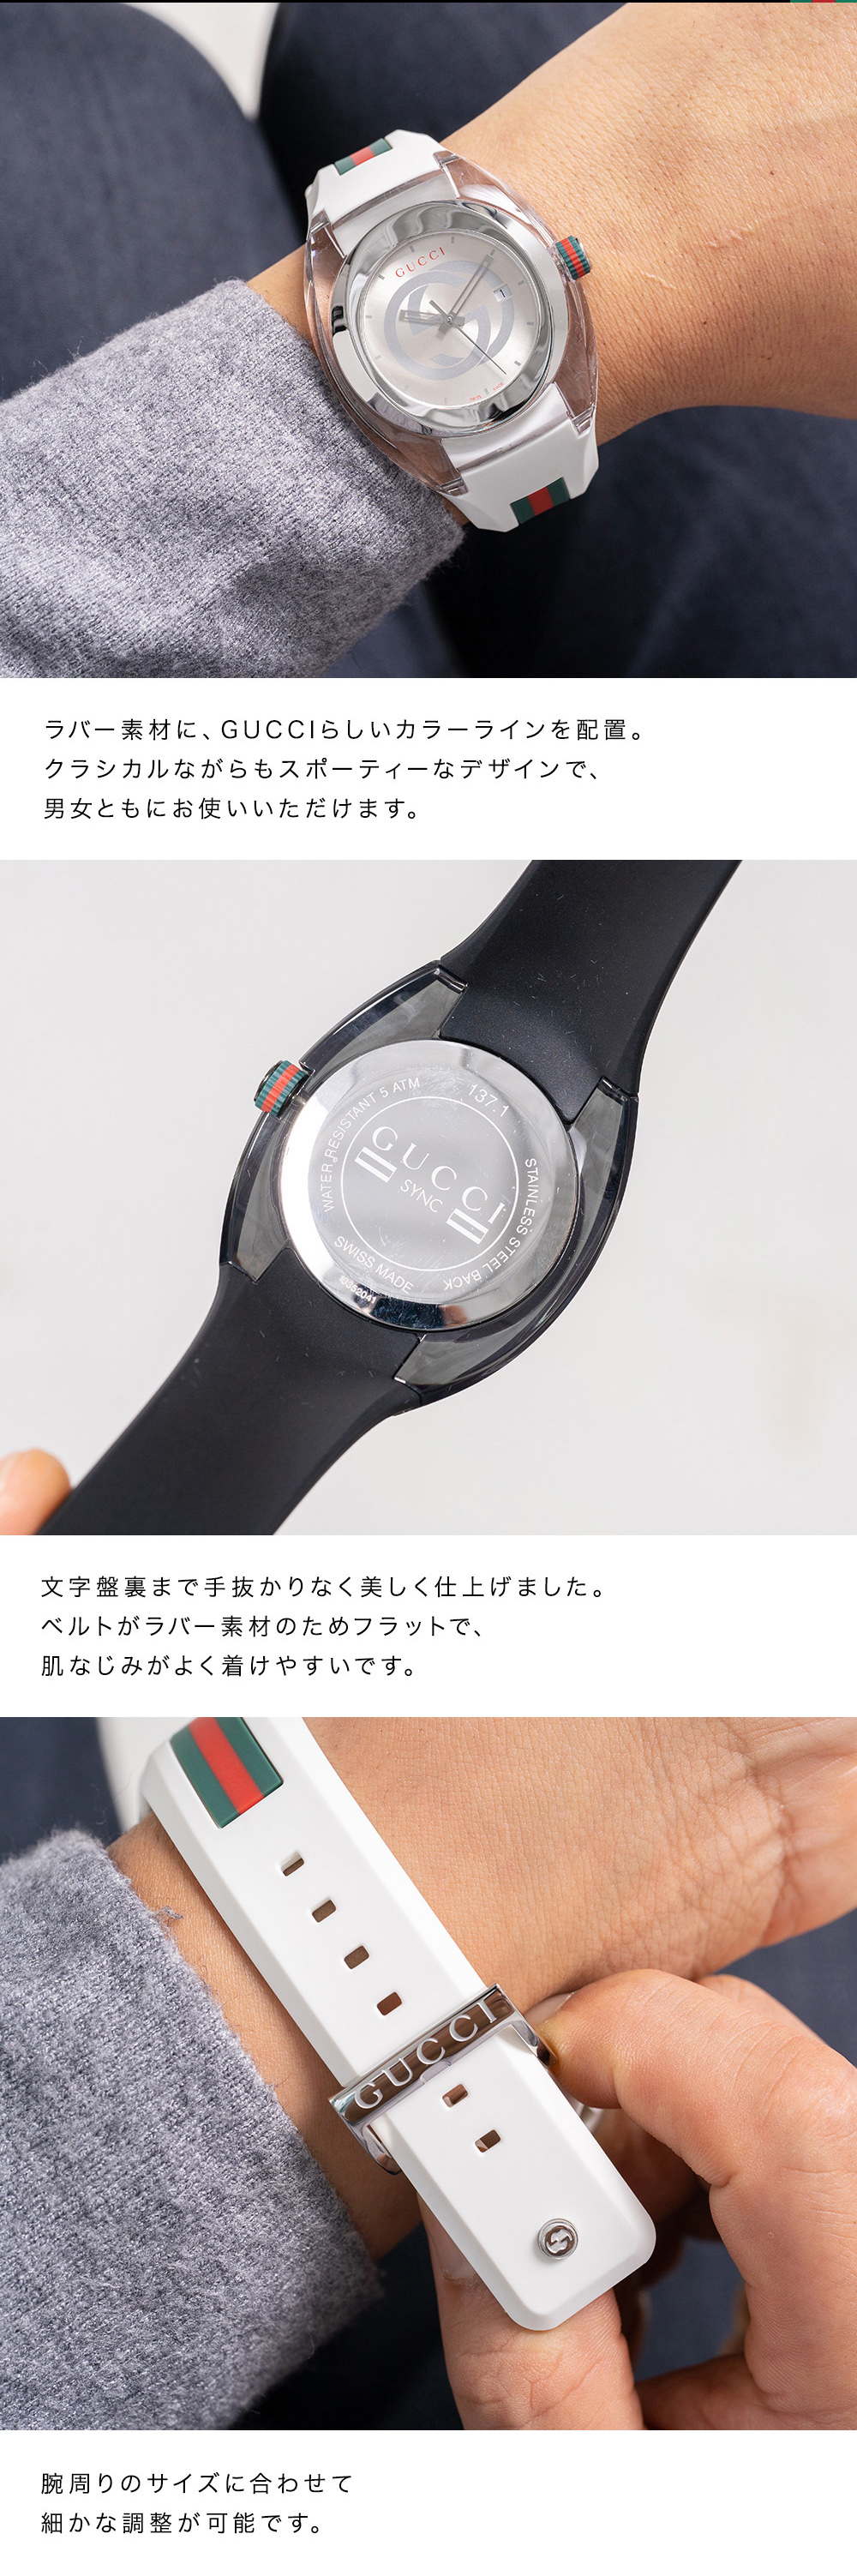 2年保証 グッチ GUCCI メンズ腕時計 シンク スイス製 46mm クオーツ 